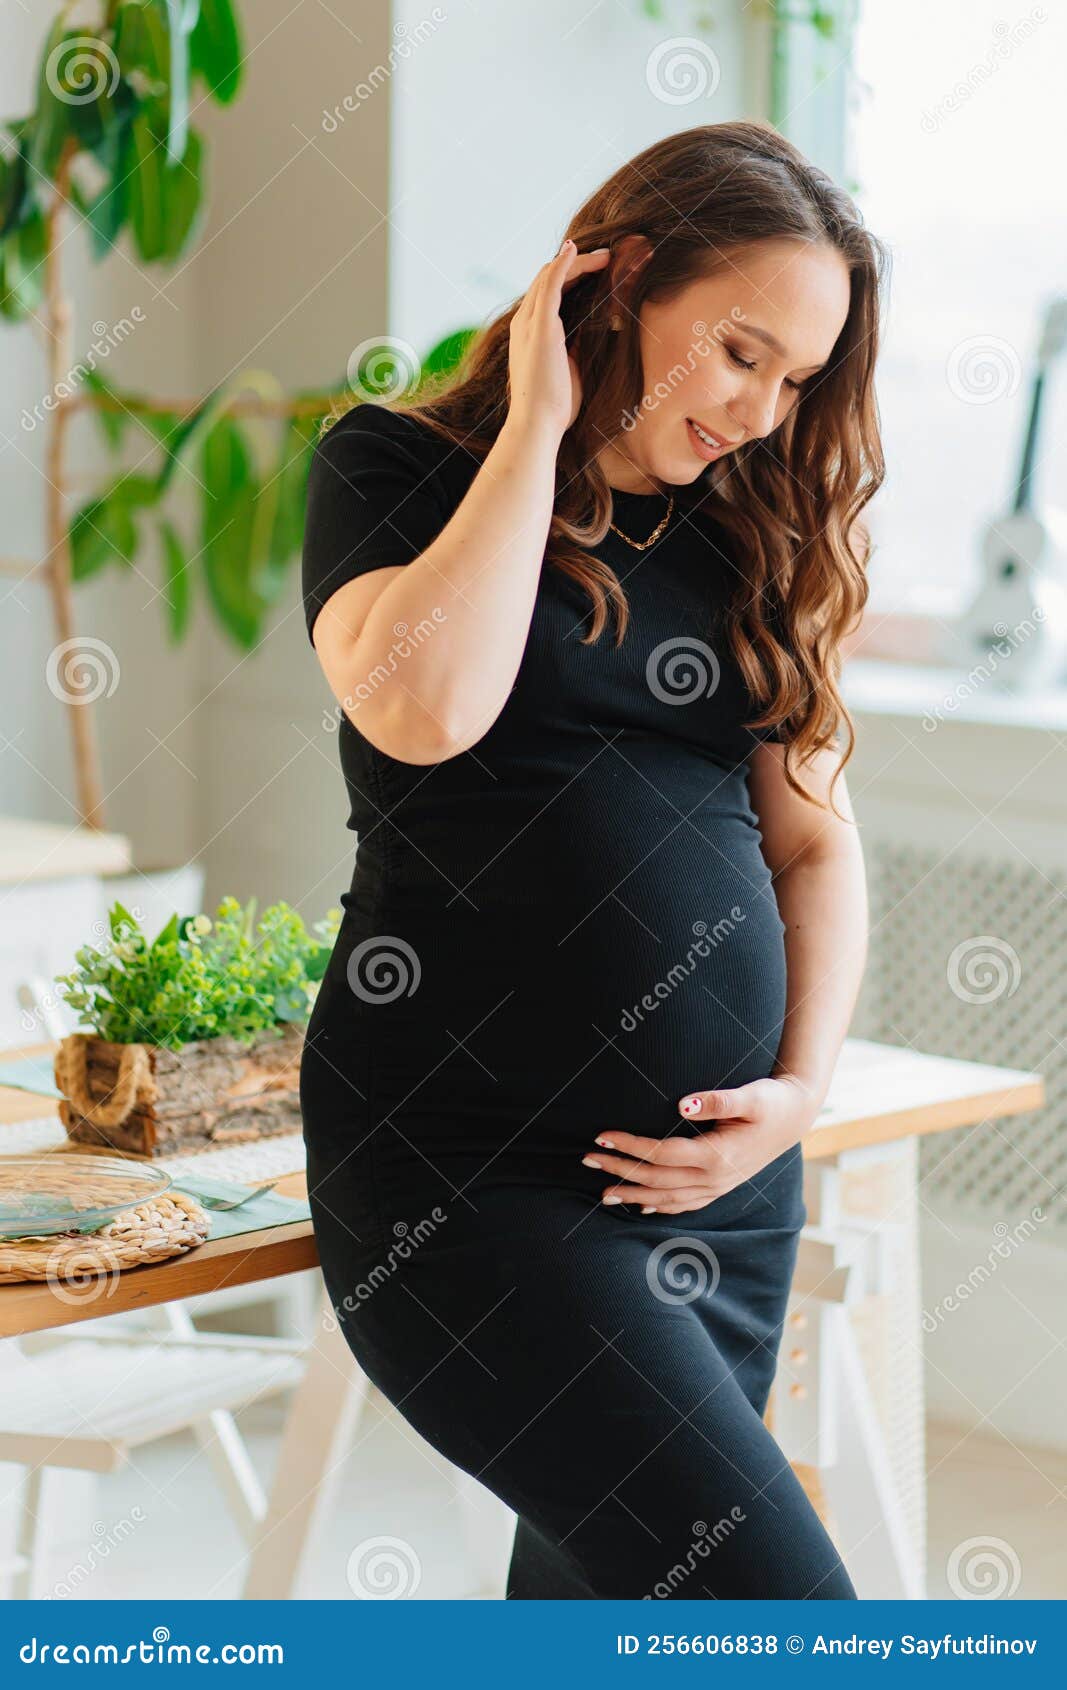 predicción Caramelo Centro de la ciudad Vista Lateral. Mujer Embarazada Con Vestido Negro Toca El Estómago En El  Interior Del Hogar Foto de archivo - Imagen de bebé, cocinero: 256606838